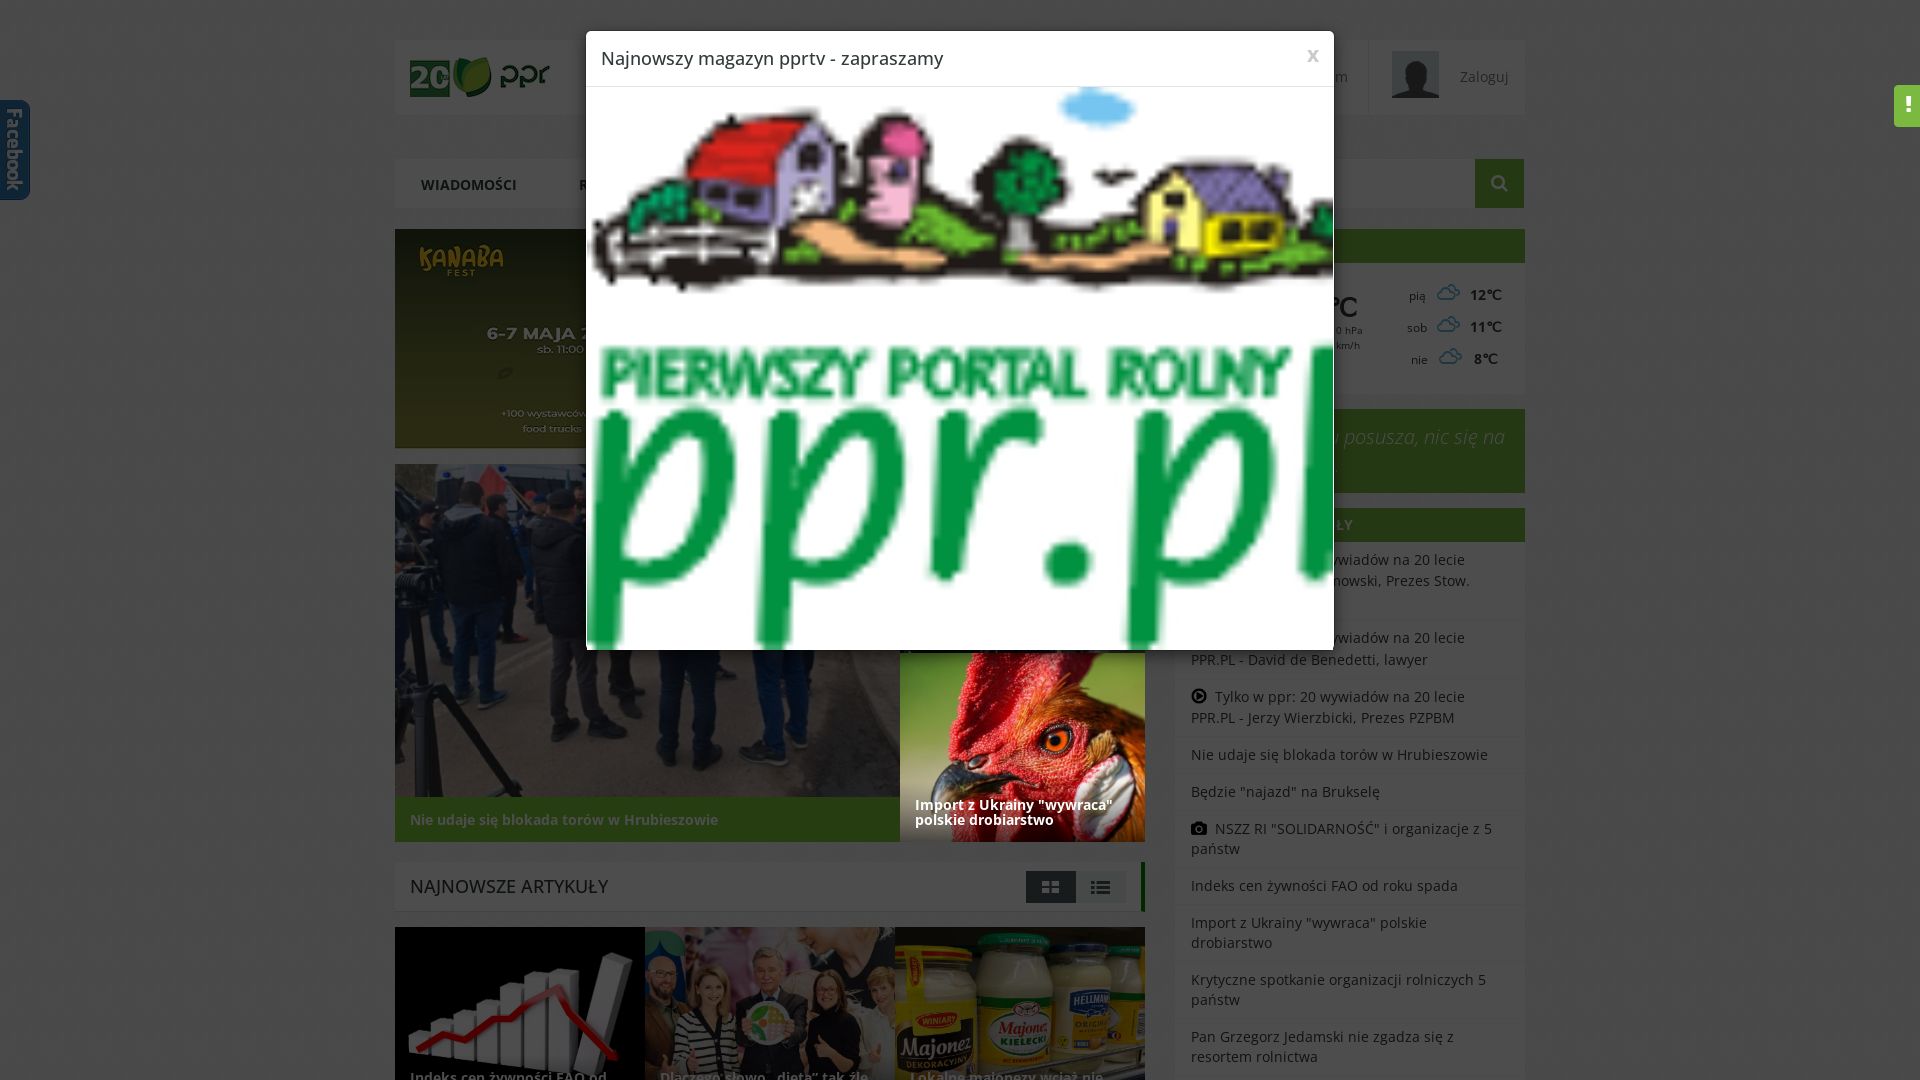 Estado web ppr.pl está   ONLINE